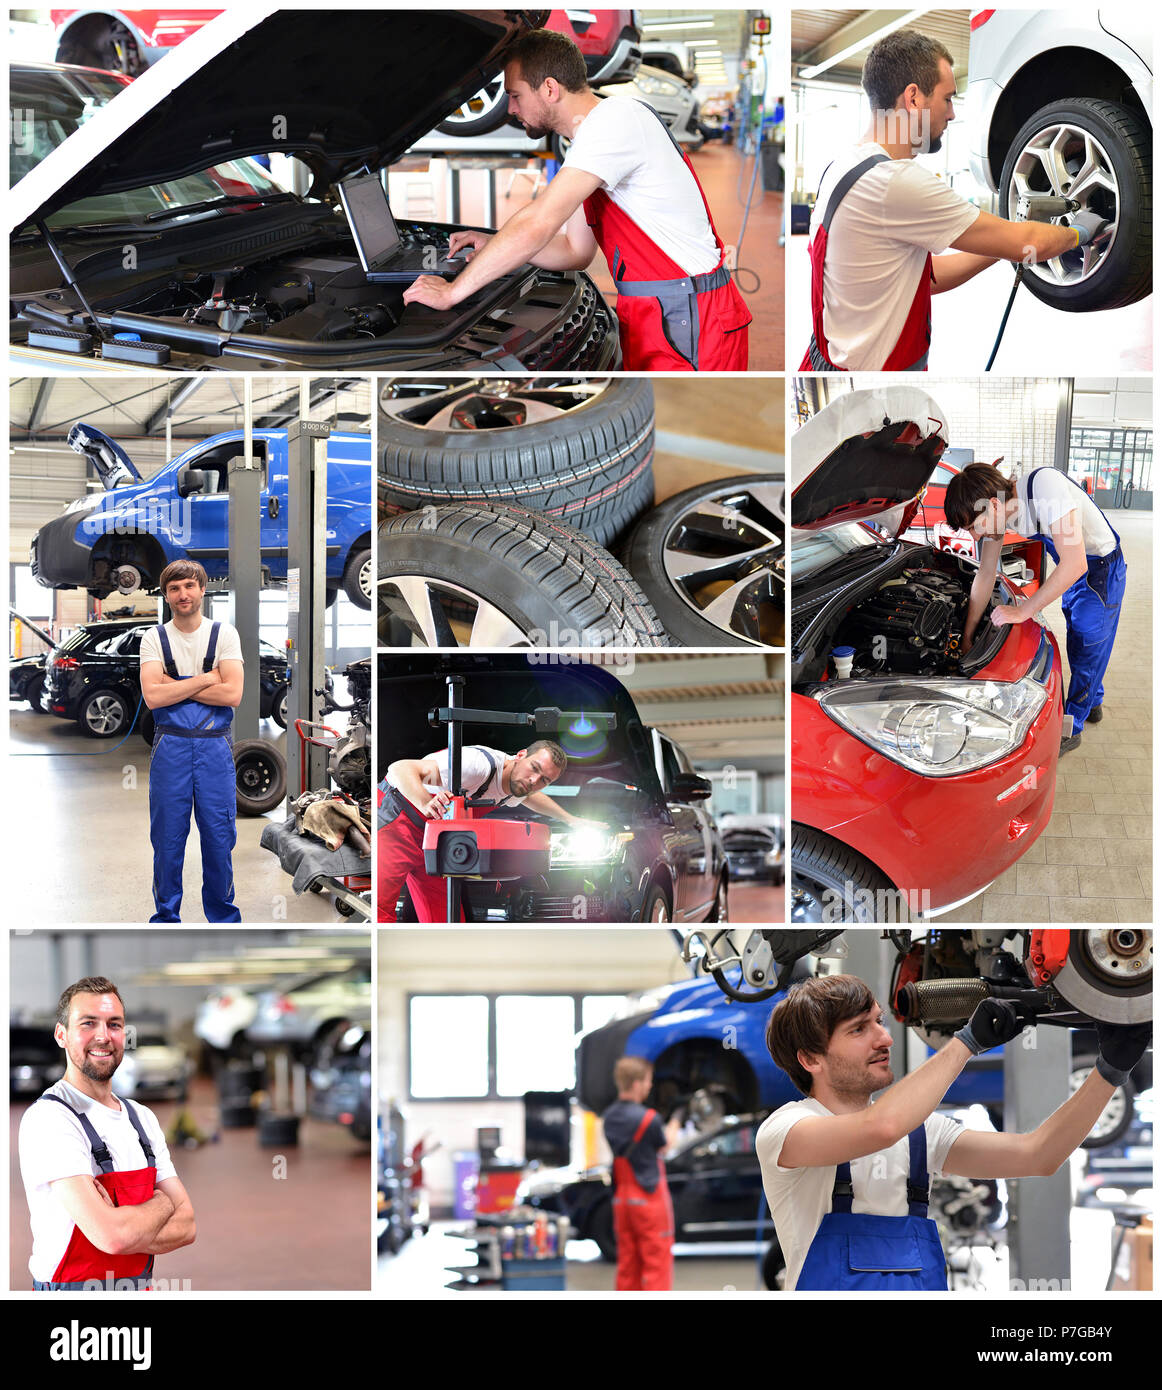 Collage avec des motifs dans un atelier de réparation automobile - réparation de voitures, changer les pneus, le diagnostic du moteur Banque D'Images